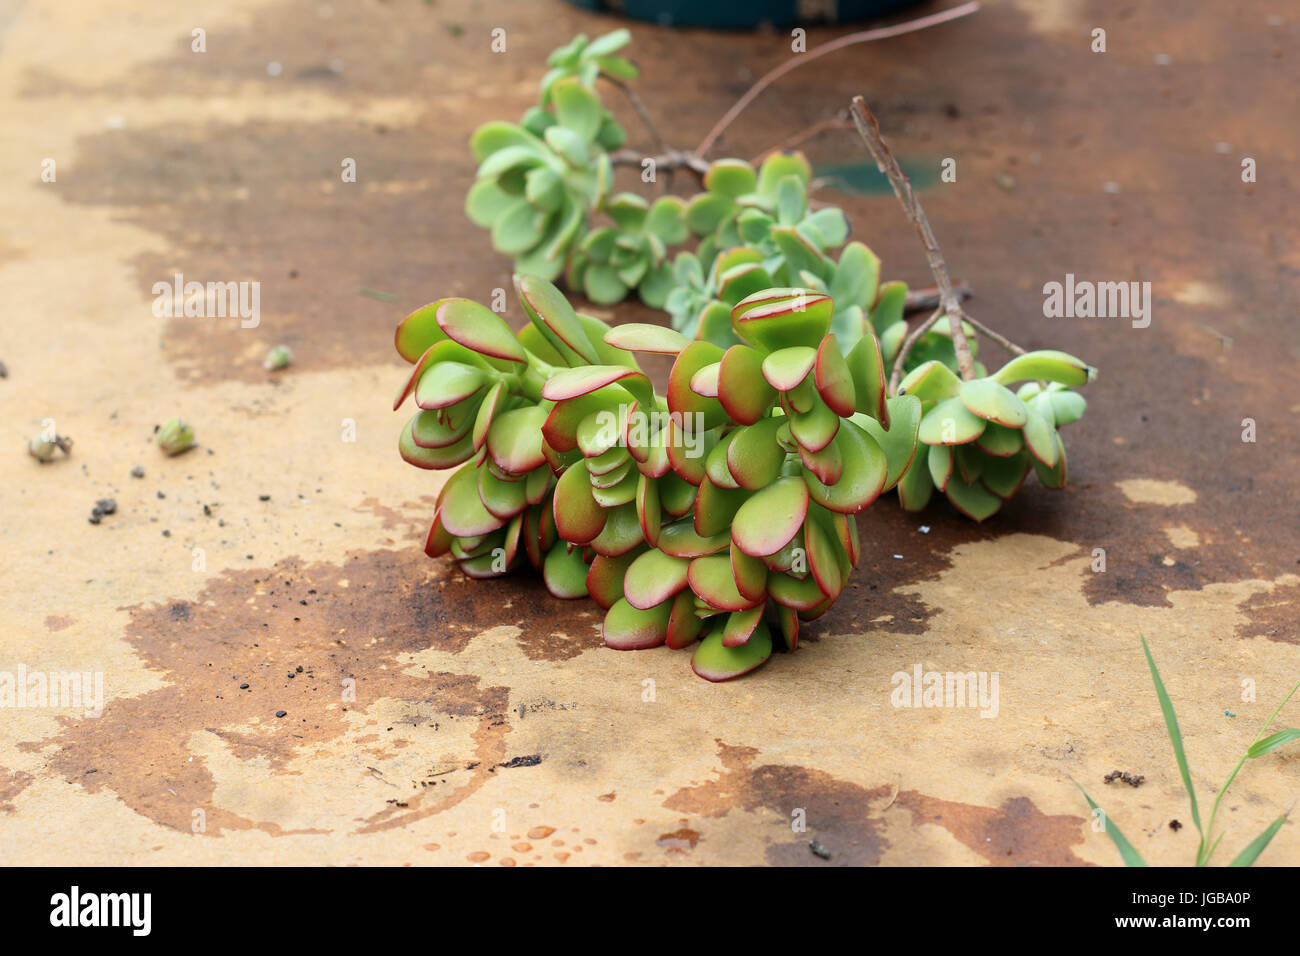 Crassula ovata fraîchement coupés ou également connu sous le nom de Jade plant Banque D'Images